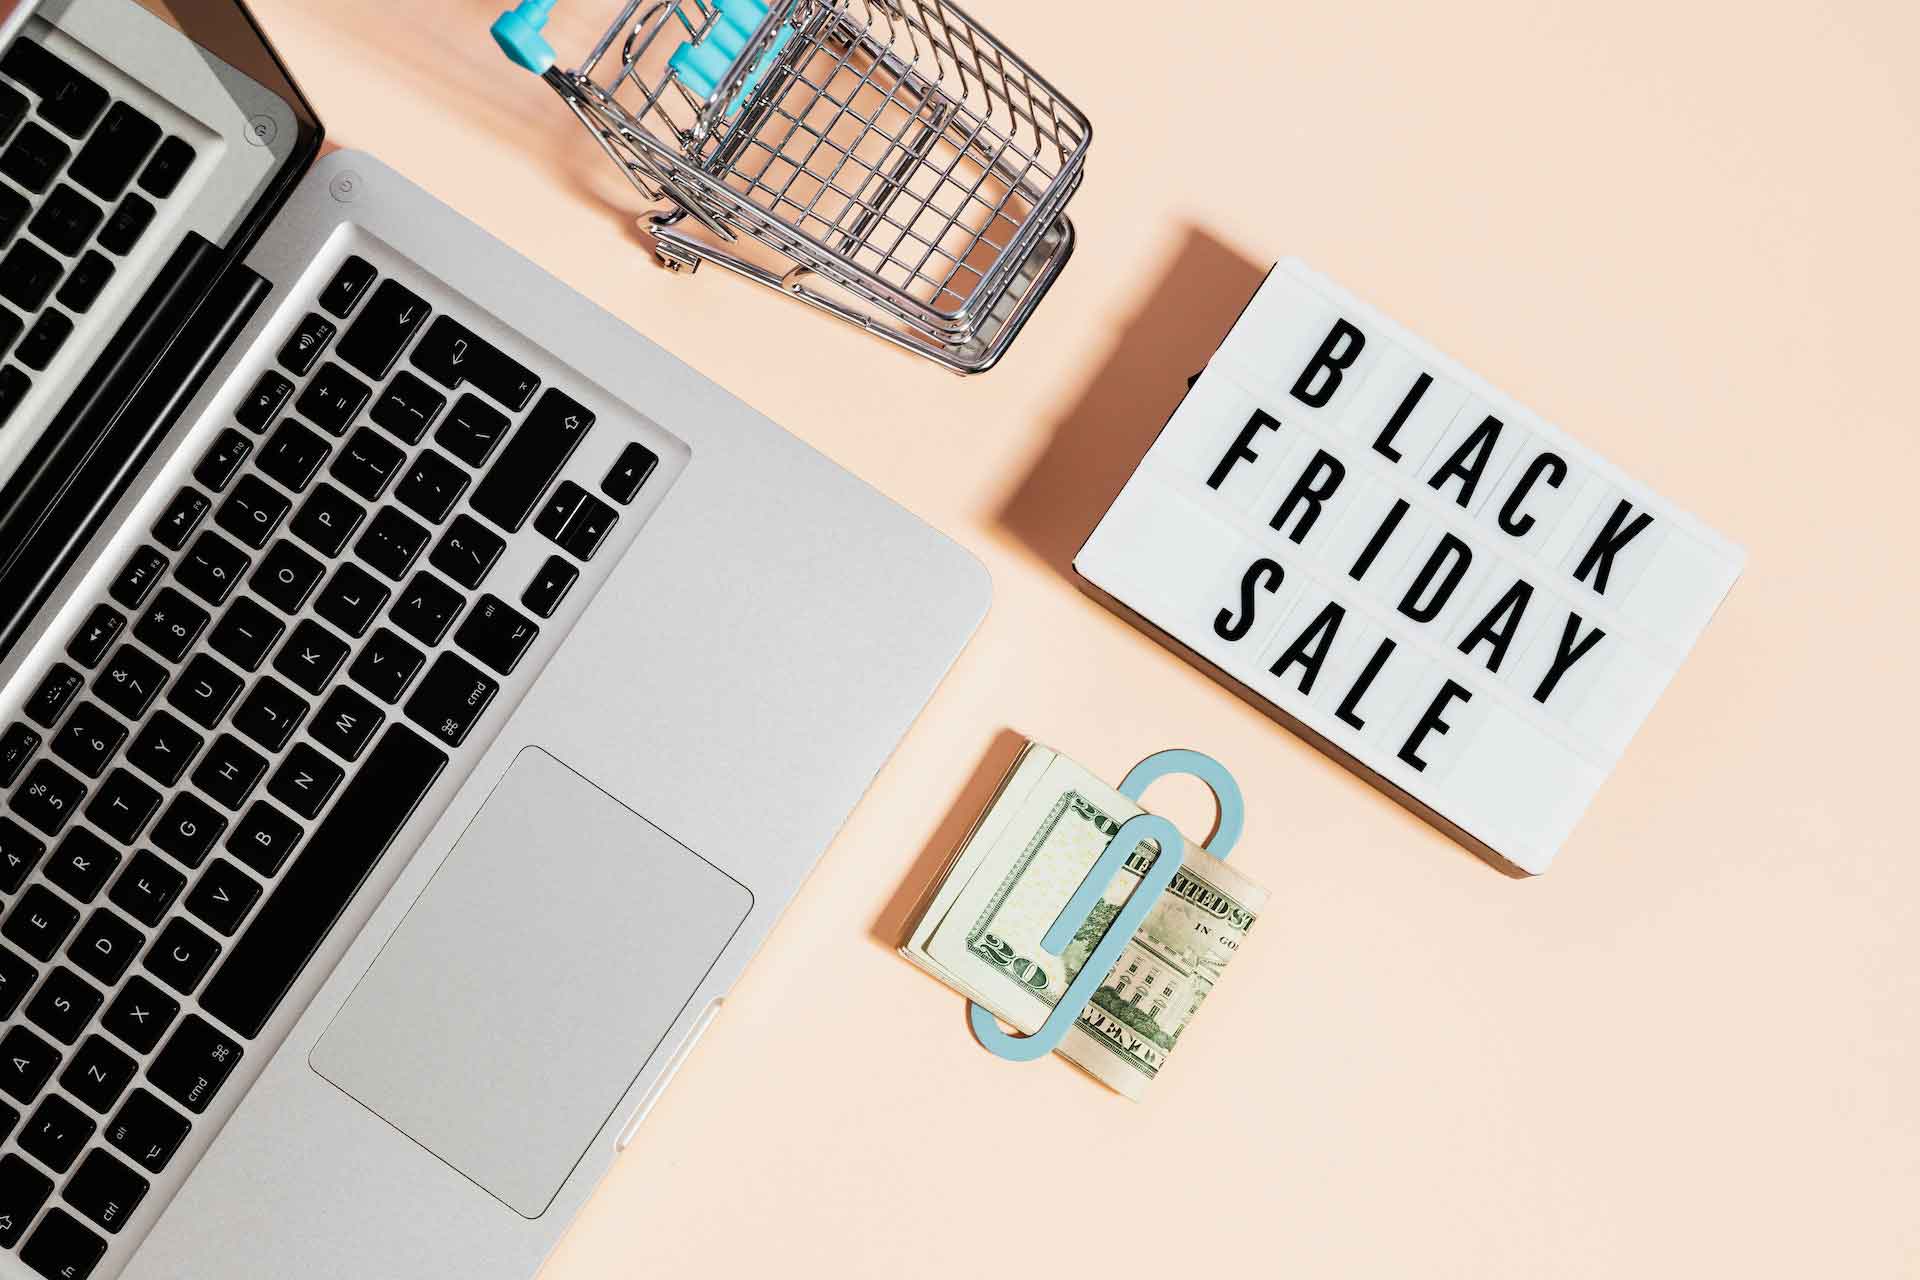 Sample Black Friday Sale Newsletter Design By Ecommerce Marketing Agency Using Black Friday Sign, Cart, Laptop, Bundled Cash